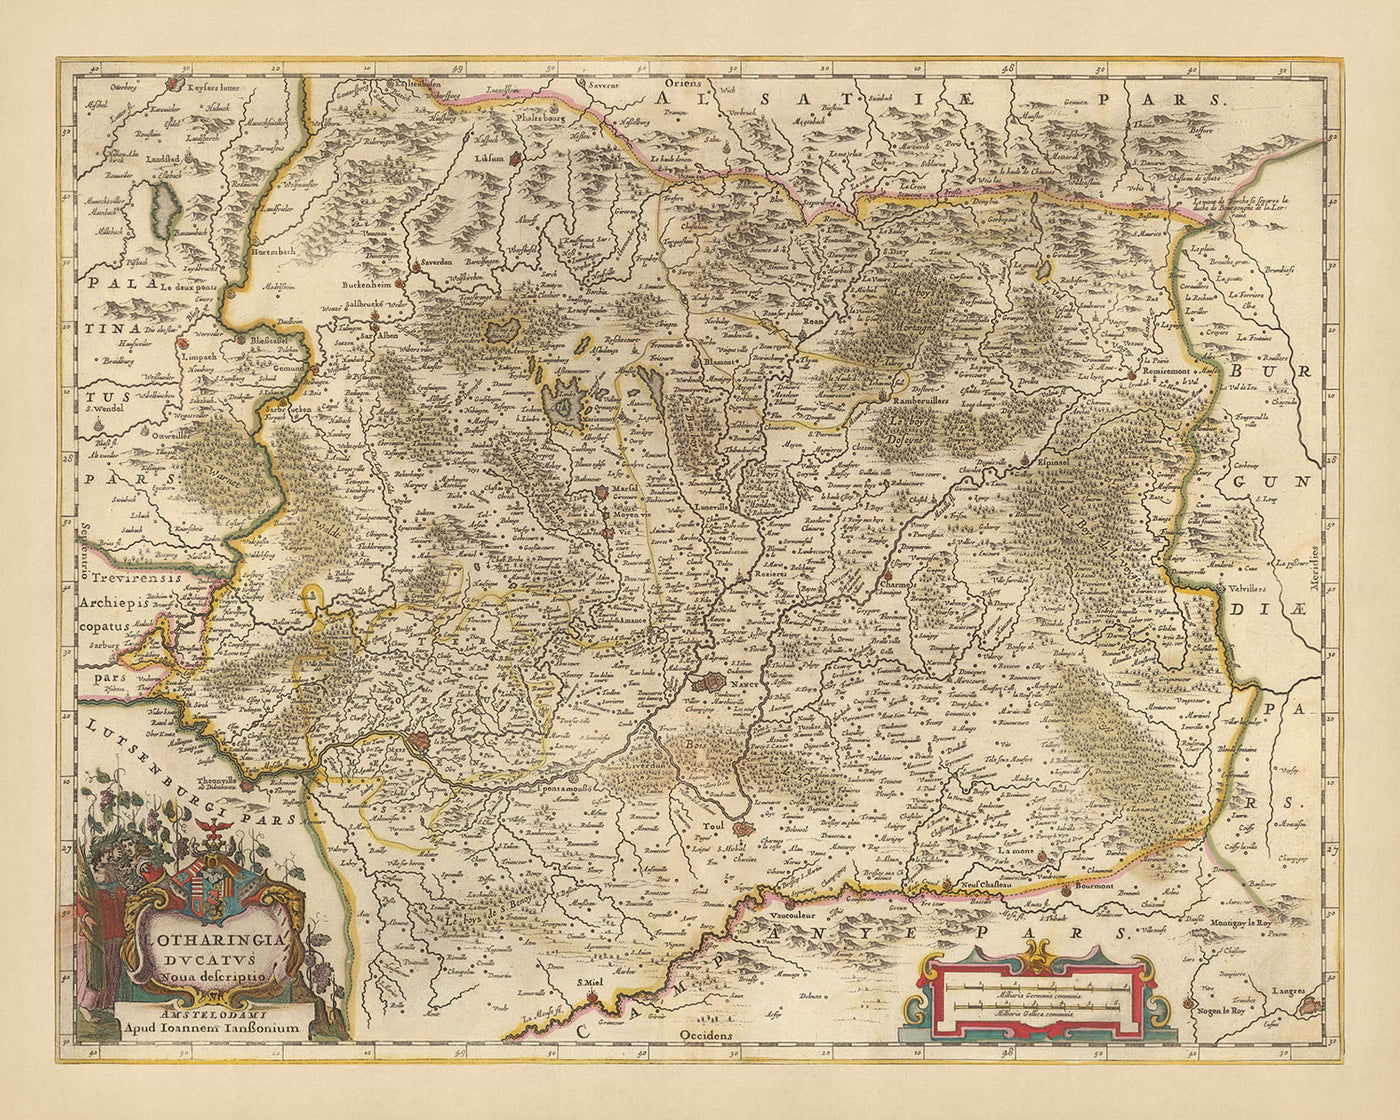 Mapa antiguo del Ducado de Lorena, Francia por Visscher, 1690: Nancy, Metz, Saarbrücken, Kaiserslauten, Parque de los Vosgos del Norte